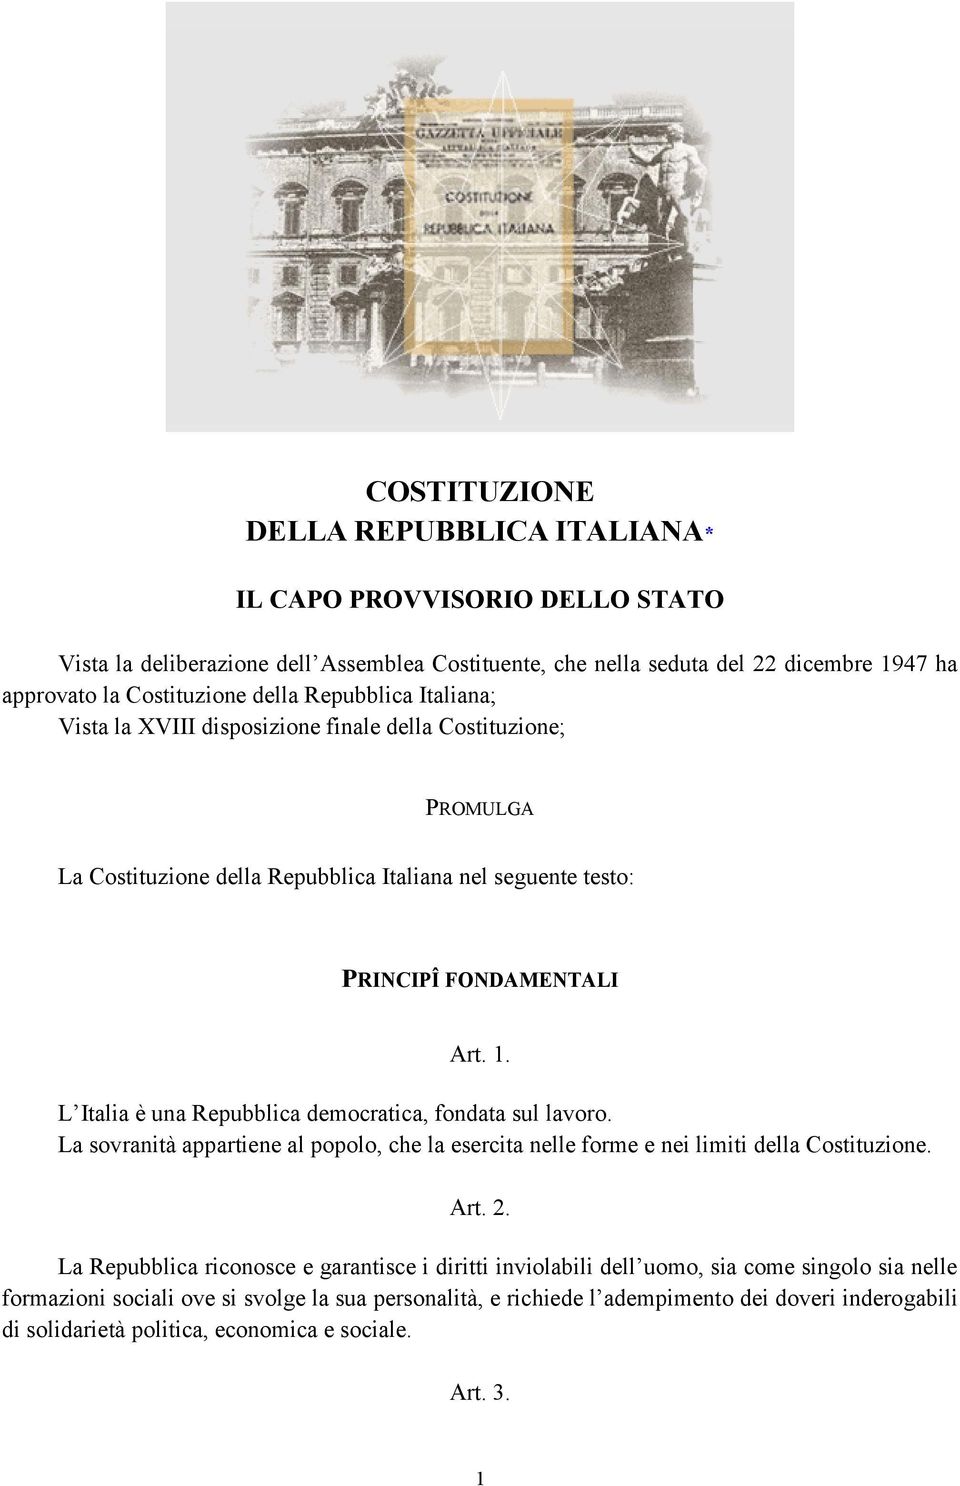 L Italia è una Repubblica democratica, fondata sul lavoro. La sovranità appartiene al popolo, che la esercita nelle forme e nei limiti della Costituzione. Art. 2.